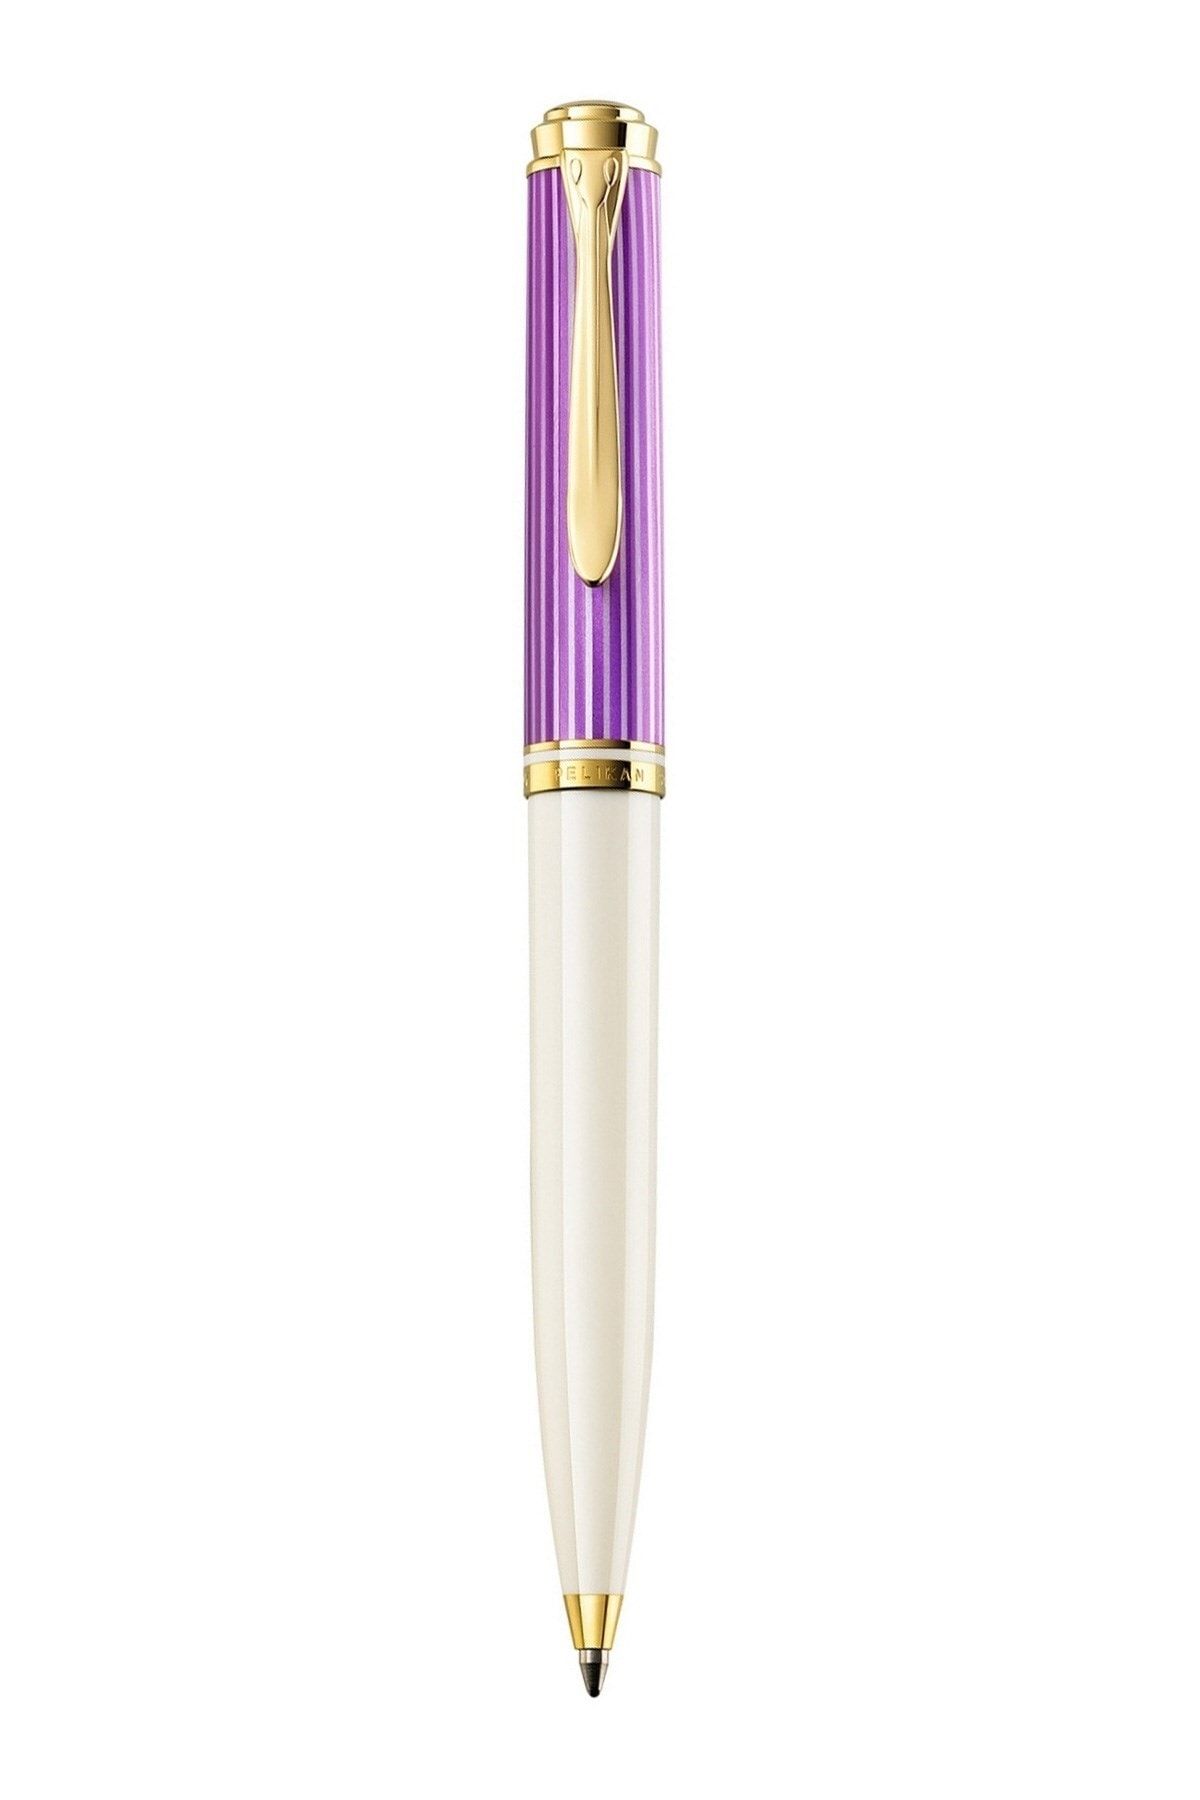 Pelikan K600 Violet White Tükenmez Kalem